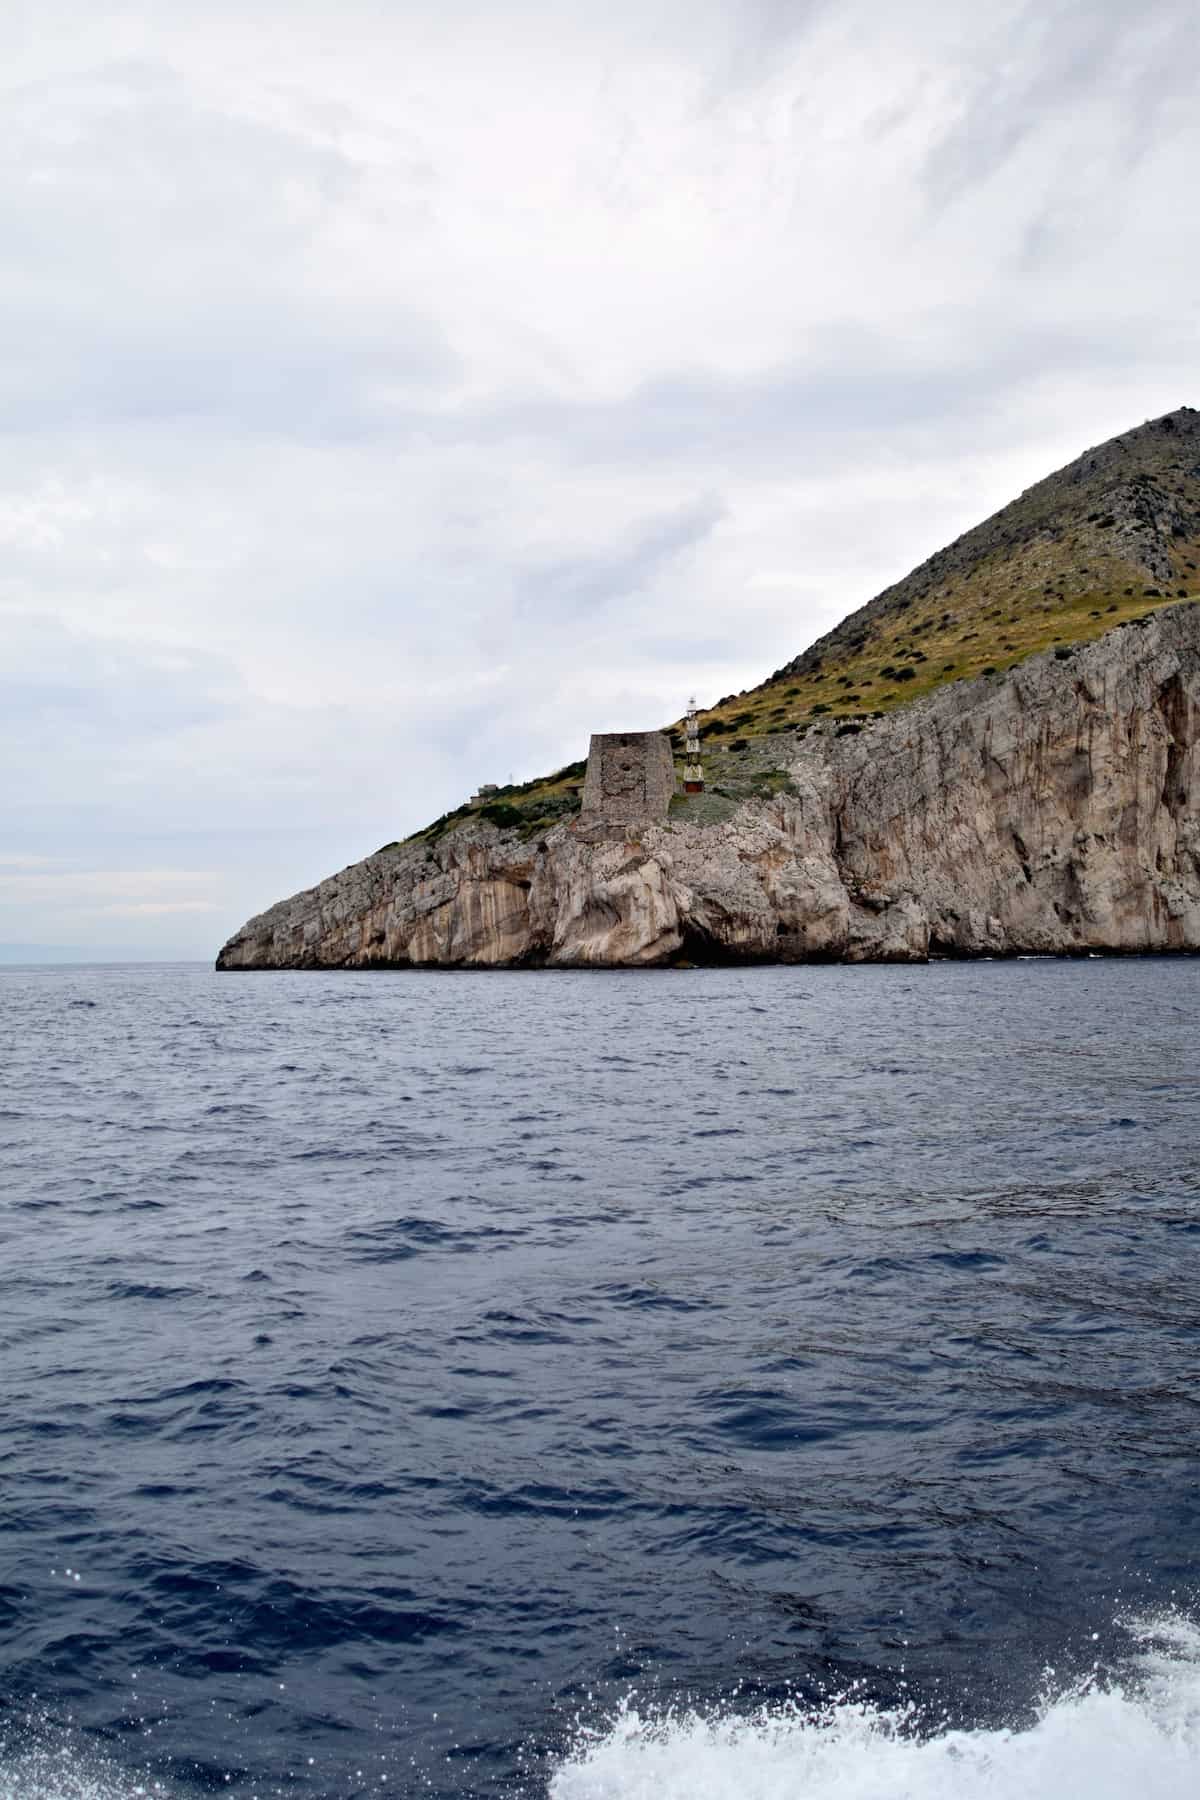 Boat to Capri